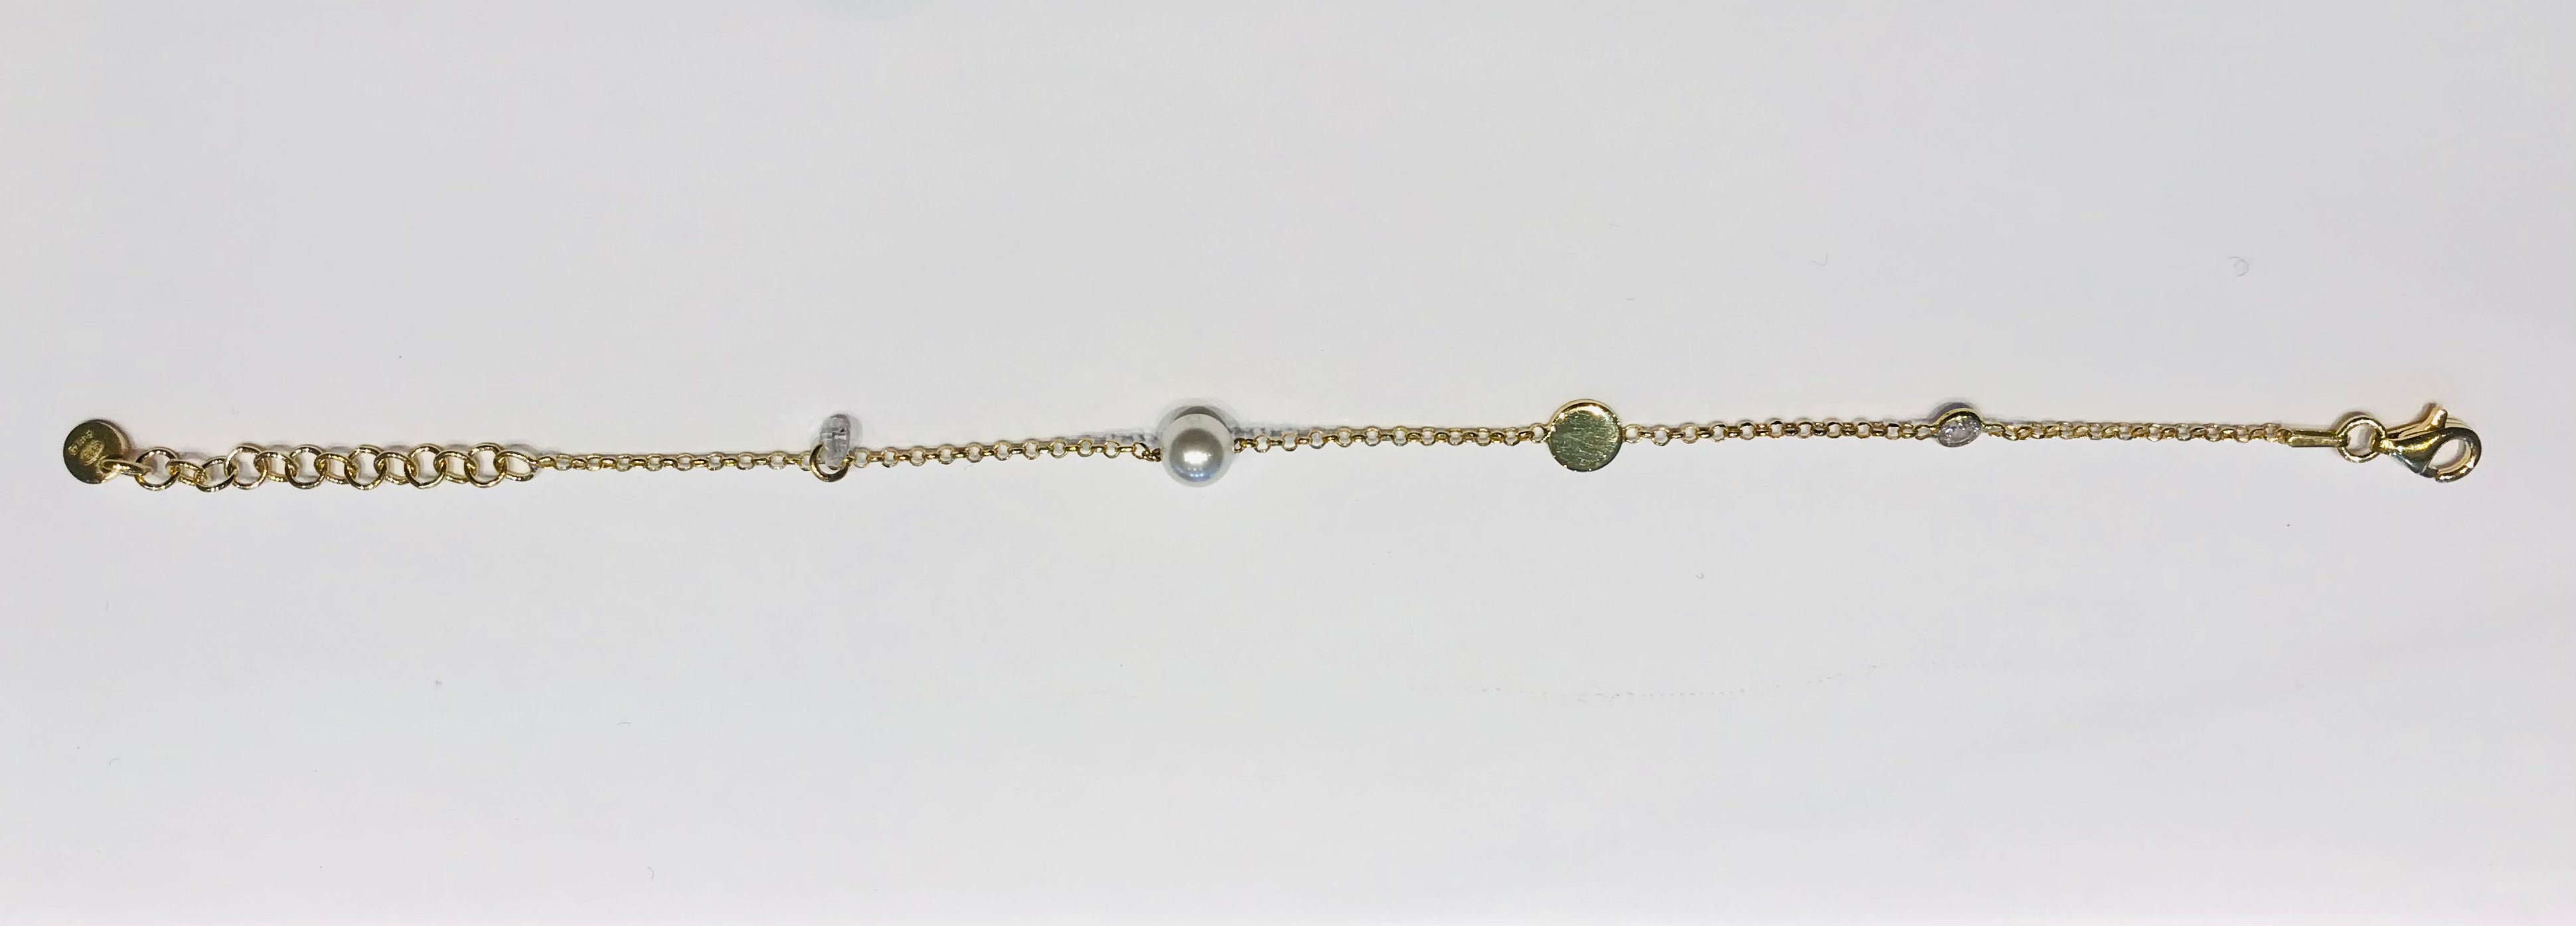 SAM&CEL bracelet with pearl and zirconium